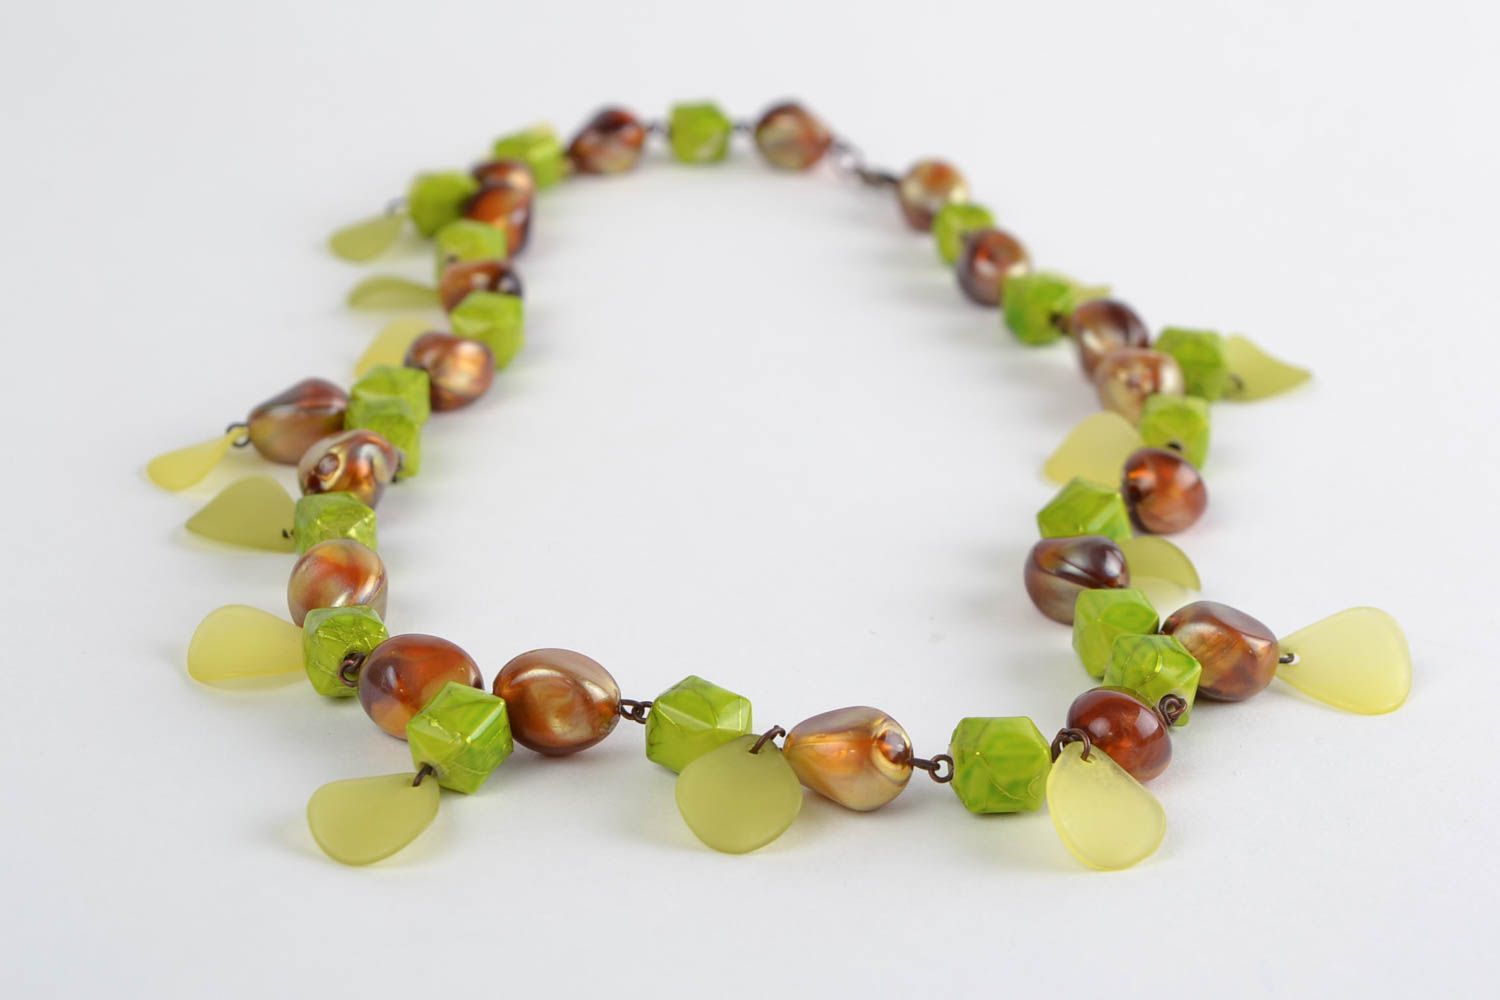 Collier fait main design original en perles acryliques vertes et brunes photo 1